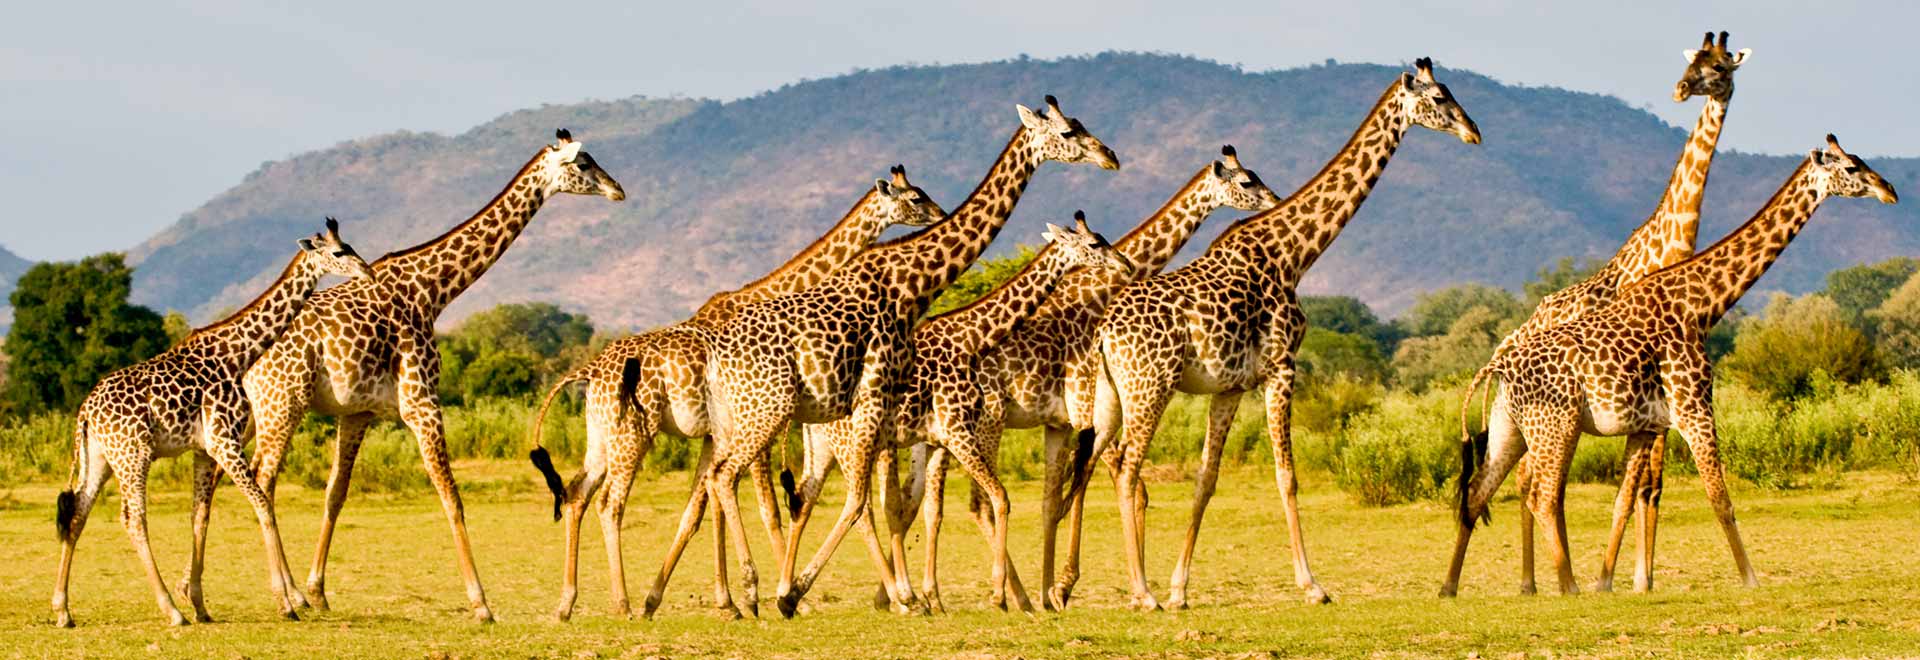 Southern Africa Zambia Field Of Giraffes